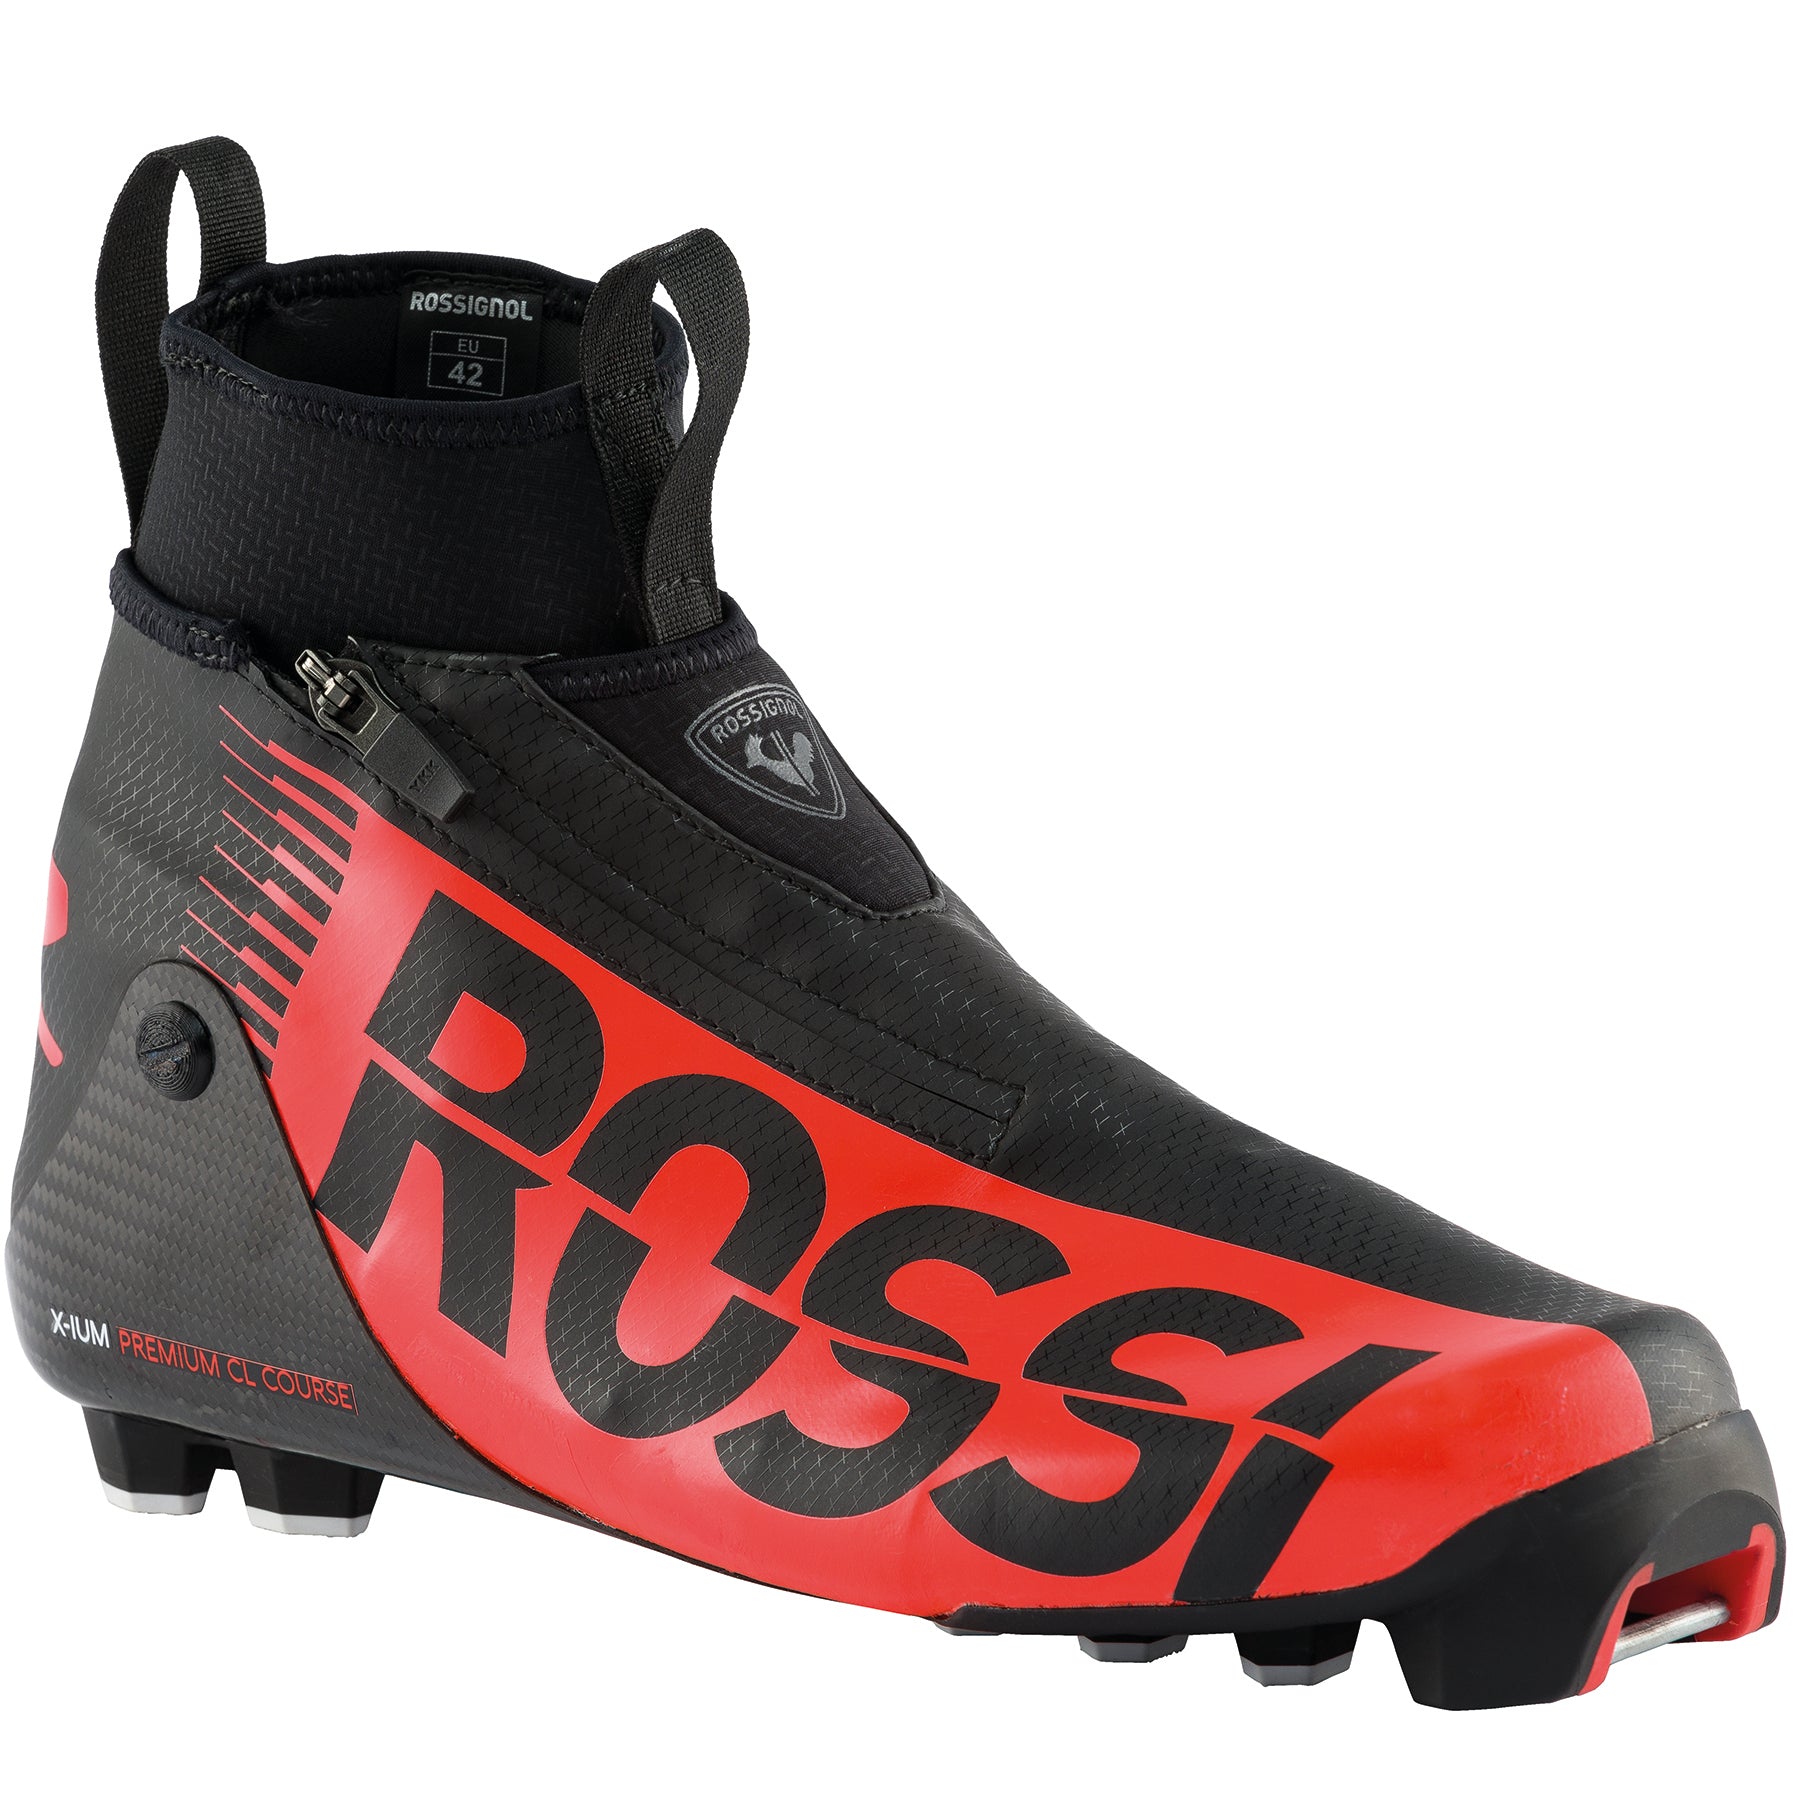 Rossignol Premium Classic Course Boot 2021-2022